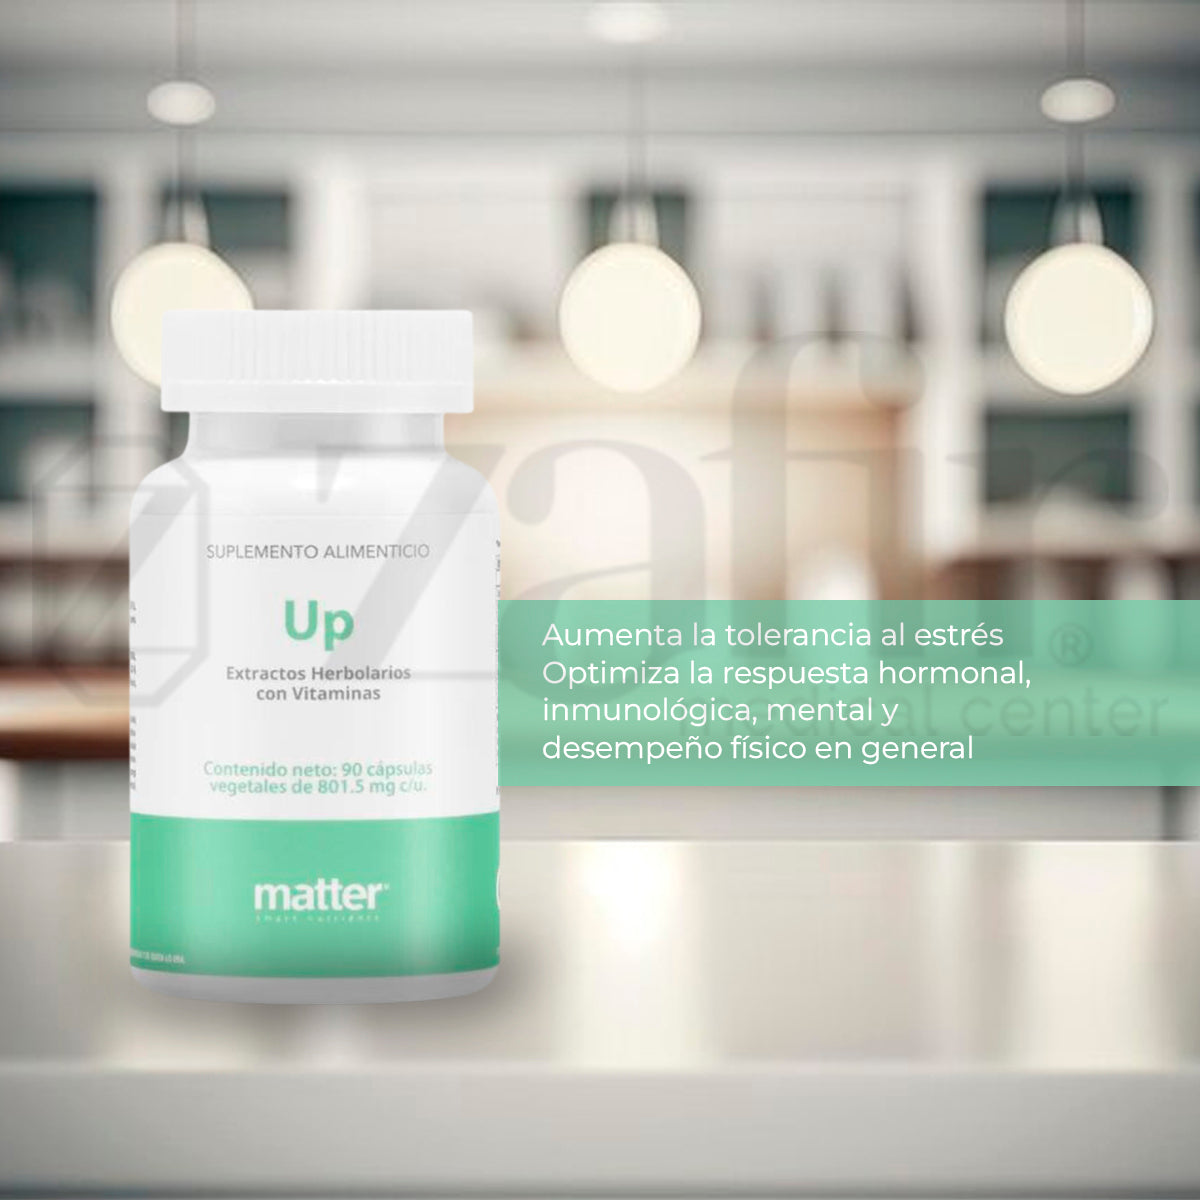 Matter UP Extractos Herbolarios con Vitaminas (90 capsulas)